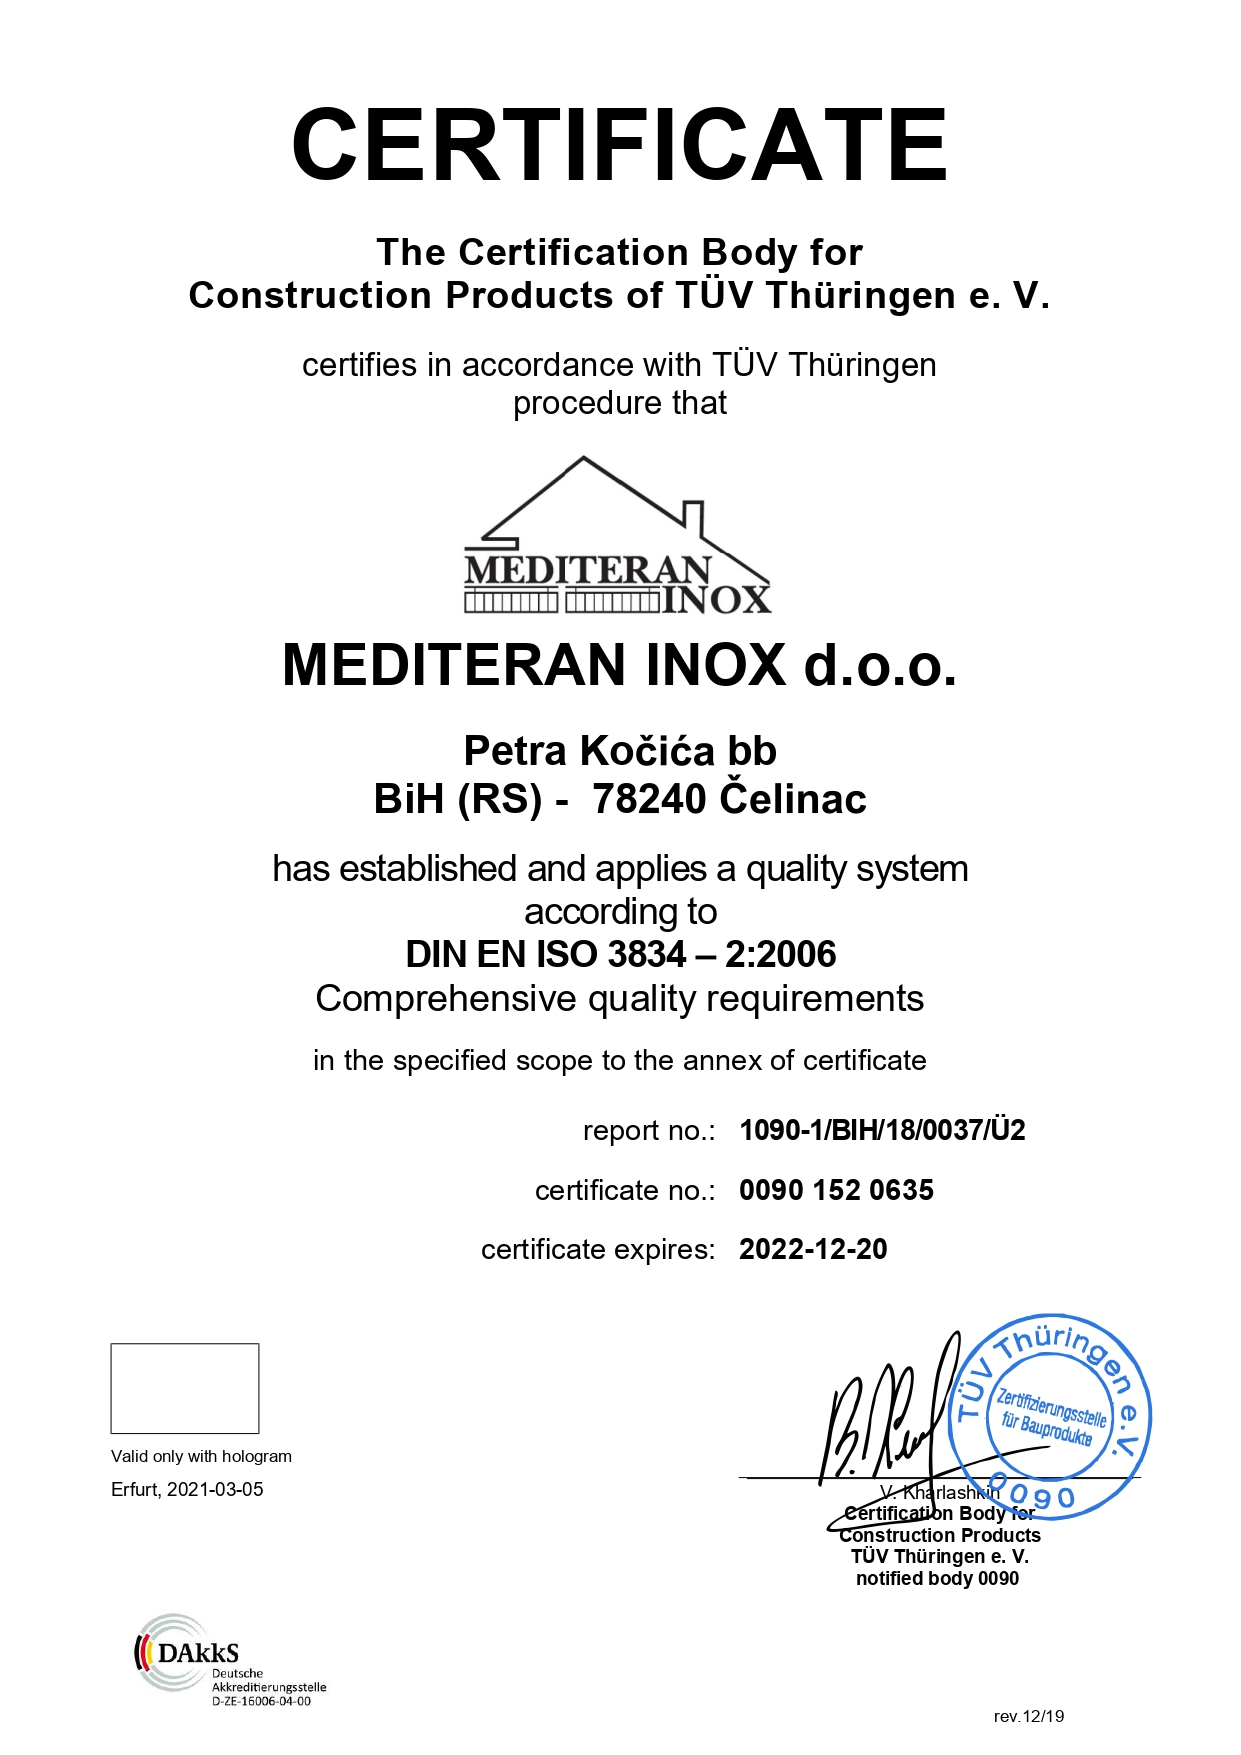 MEDITERAN INOX doo Certificate QS ISO3834 2 page 0001